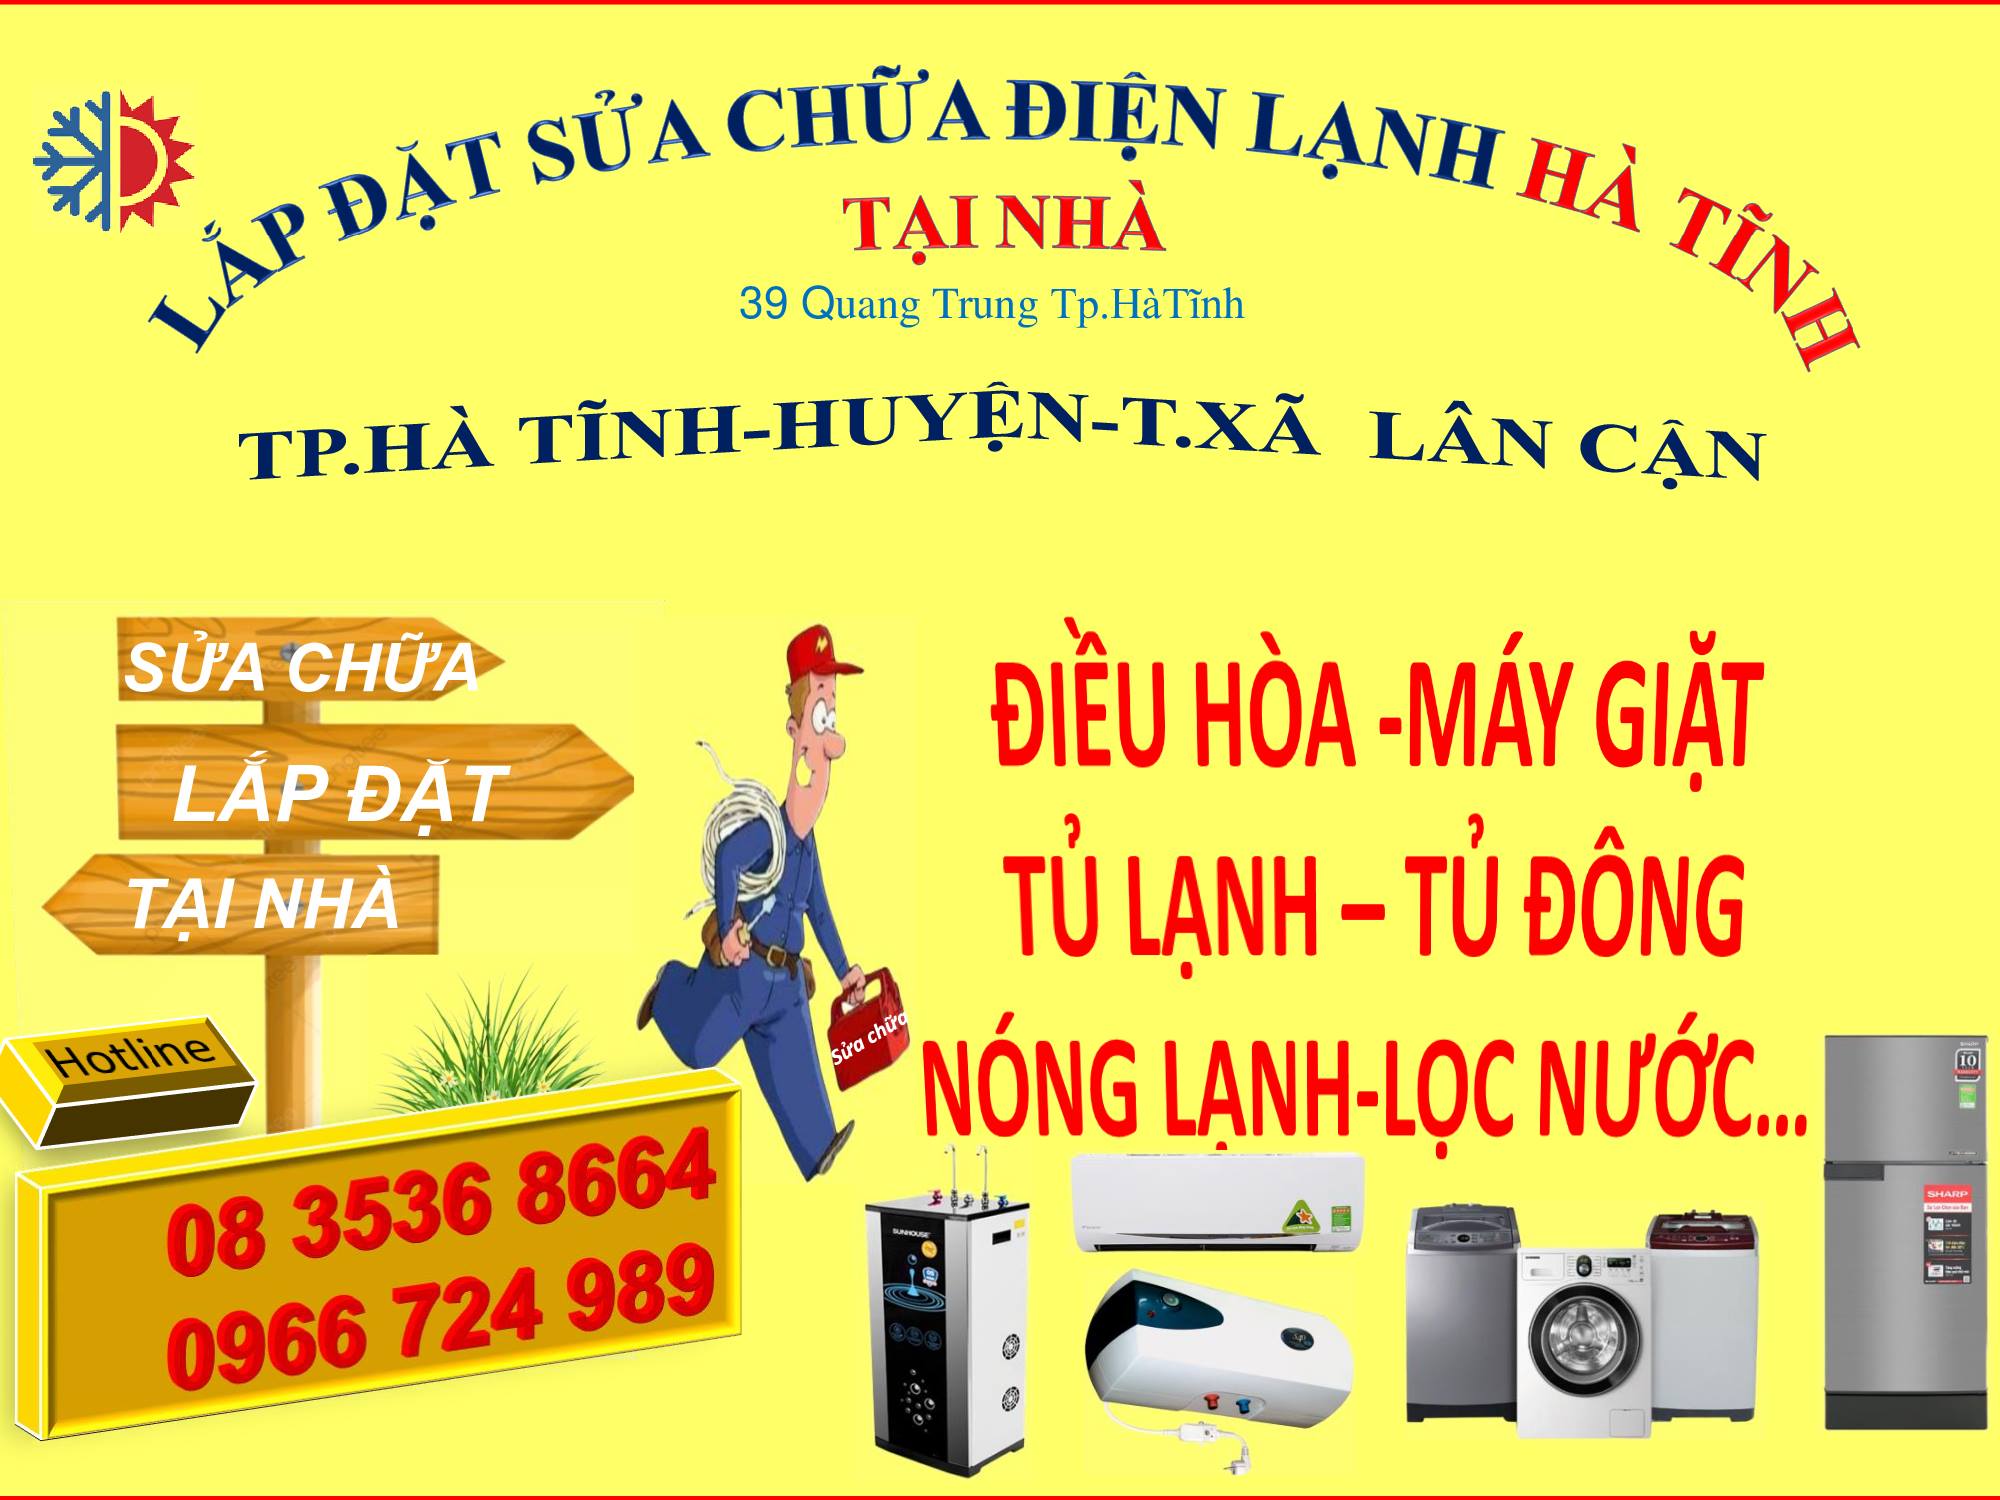 Sửa chữa lắp đặt điện nước điện lạnh Quang Trung - TP Hà Tĩnh